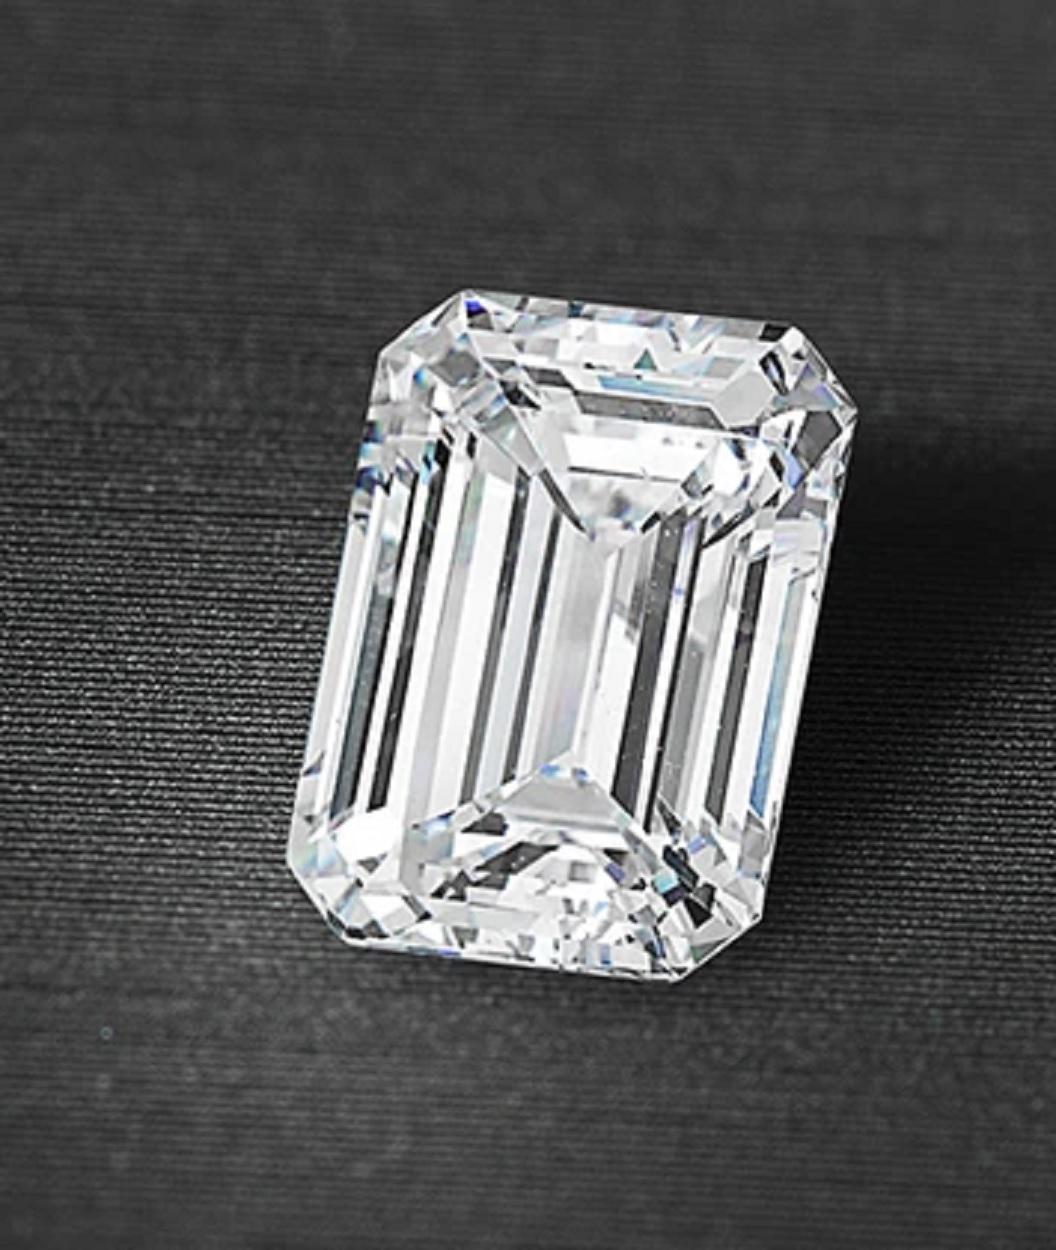 Voici une pièce de joaillerie extraordinaire : une bague en platine certifiée GIA avec un solitaire en diamant émeraude de 5 carats. La pièce maîtresse de cette superbe bague est un magnifique diamant taille émeraude de 5 carats, certifié par le